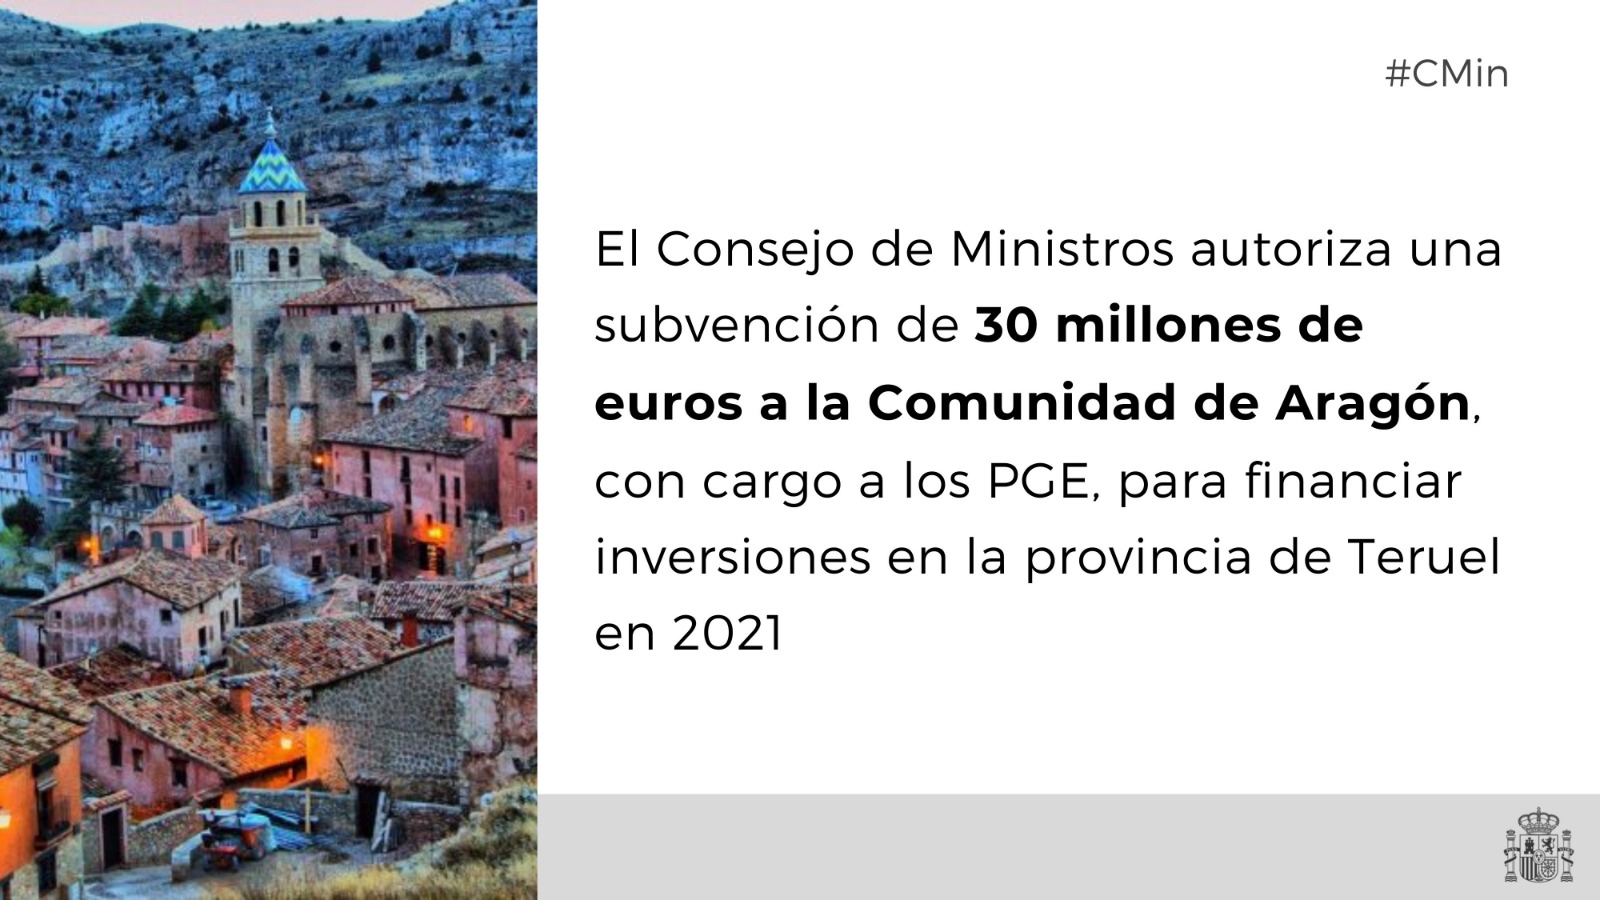 Subvención de 30 millones de euros a la Comunidad Autónoma de Aragón para financiar inversiones en la provincia de Teruel en 2021

